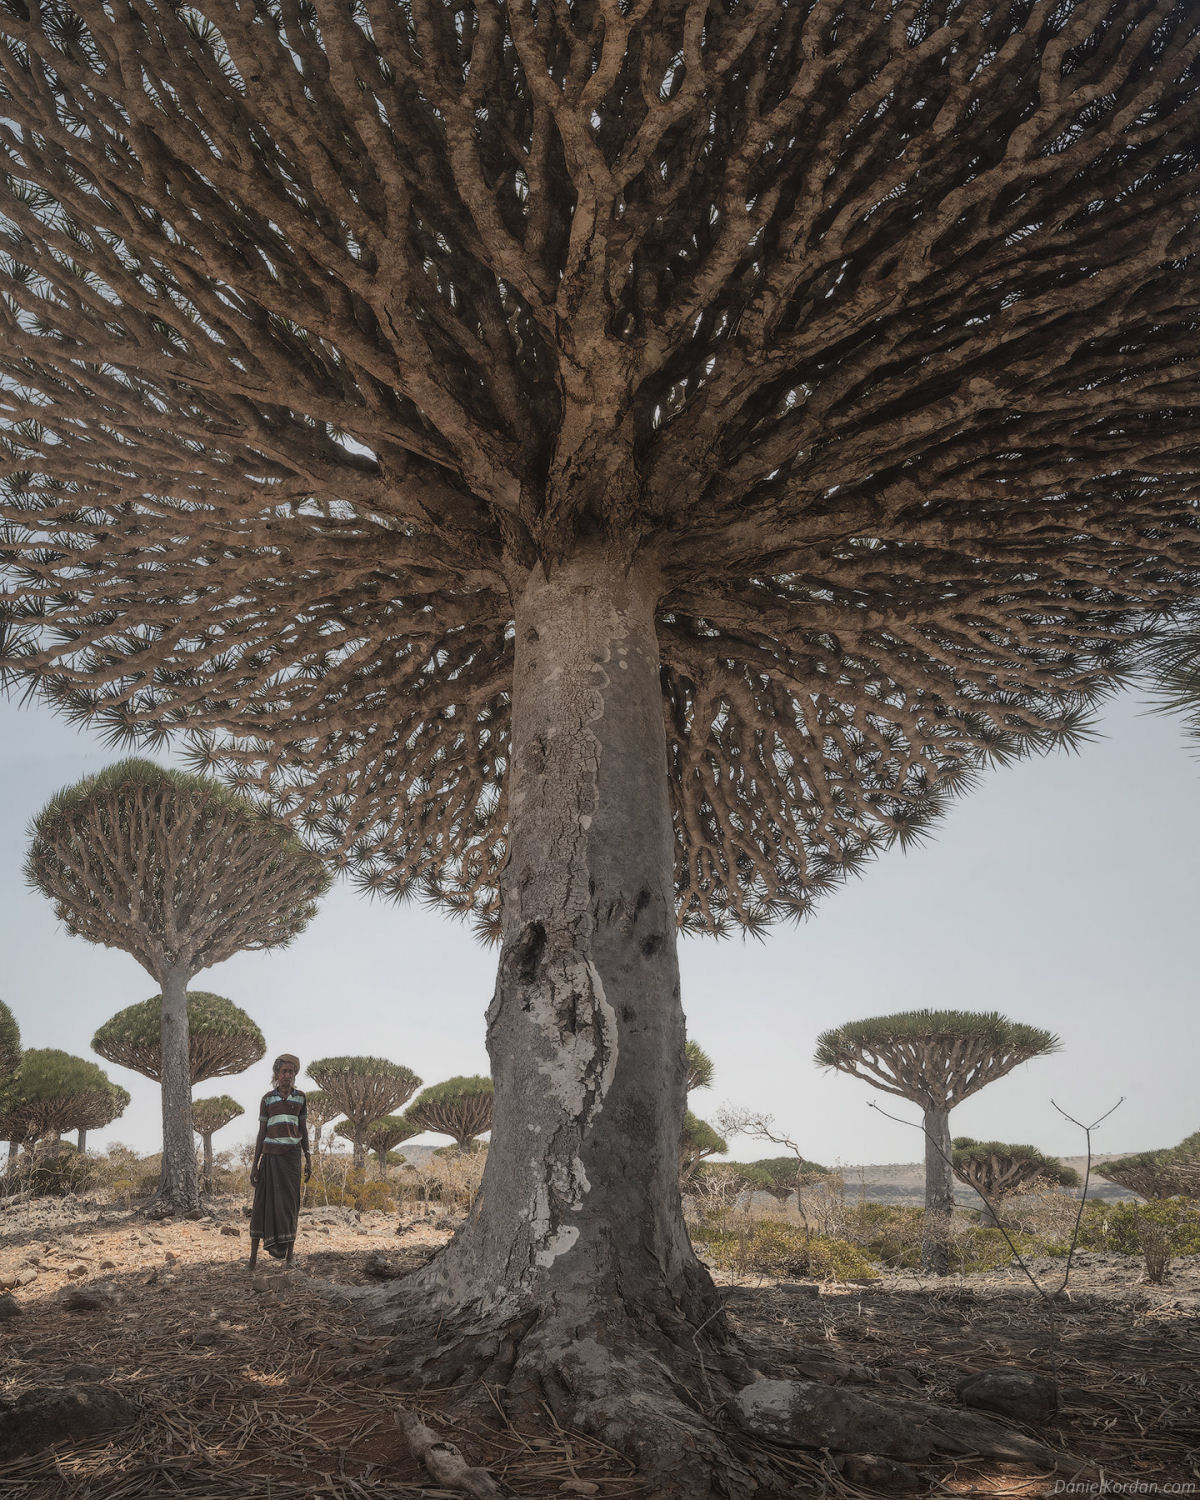 Fotosérie incrível registra os ramos retorcidos dos dragoeiros de Socotra 04